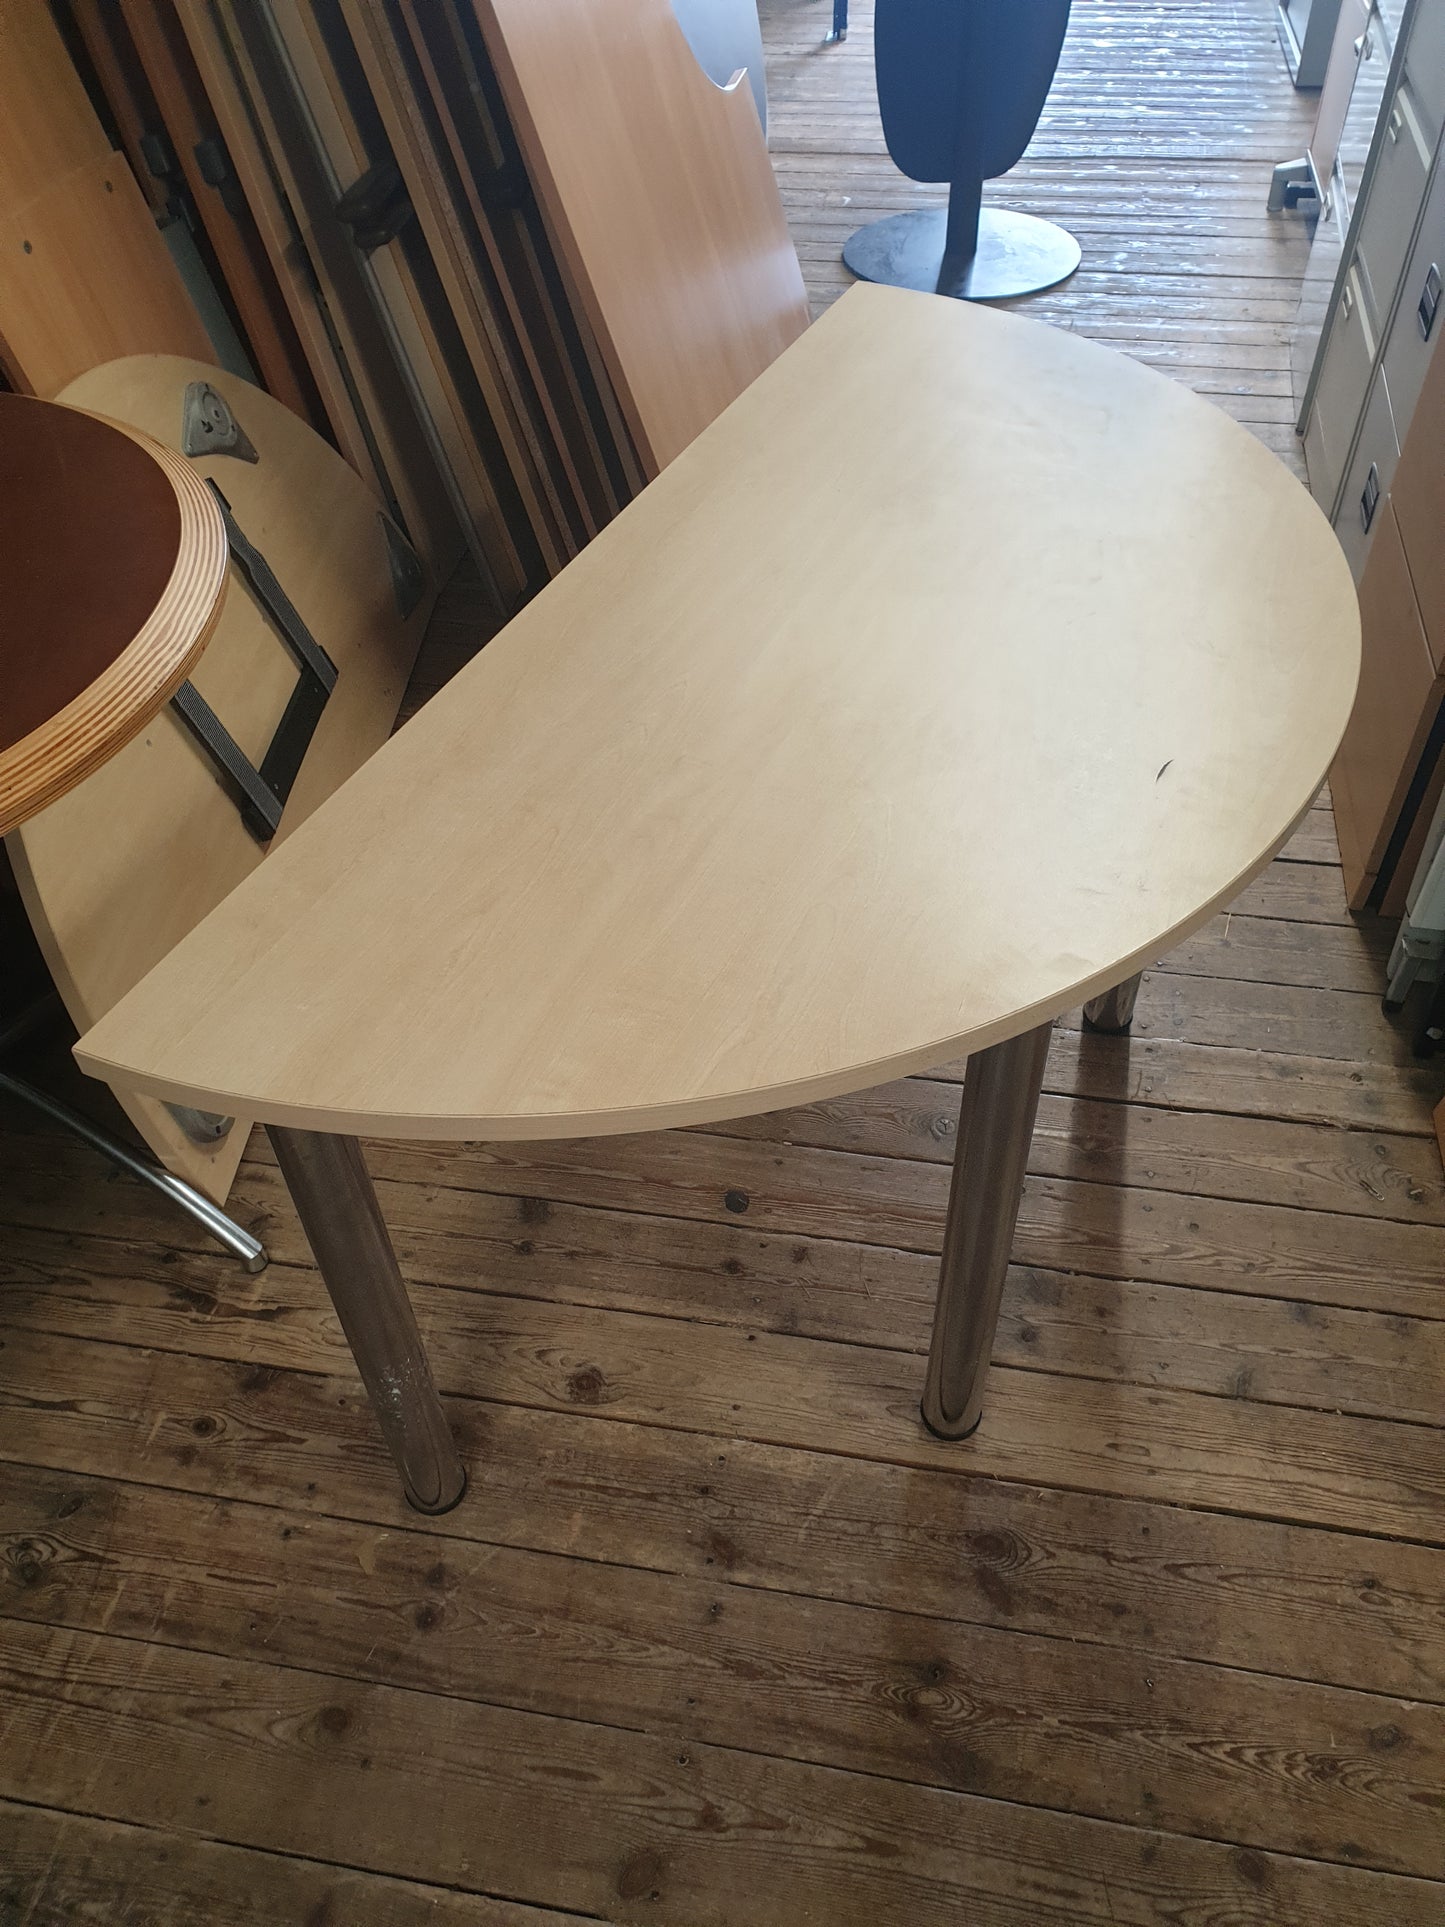 Semi Circular Table - 140 x 70 cm